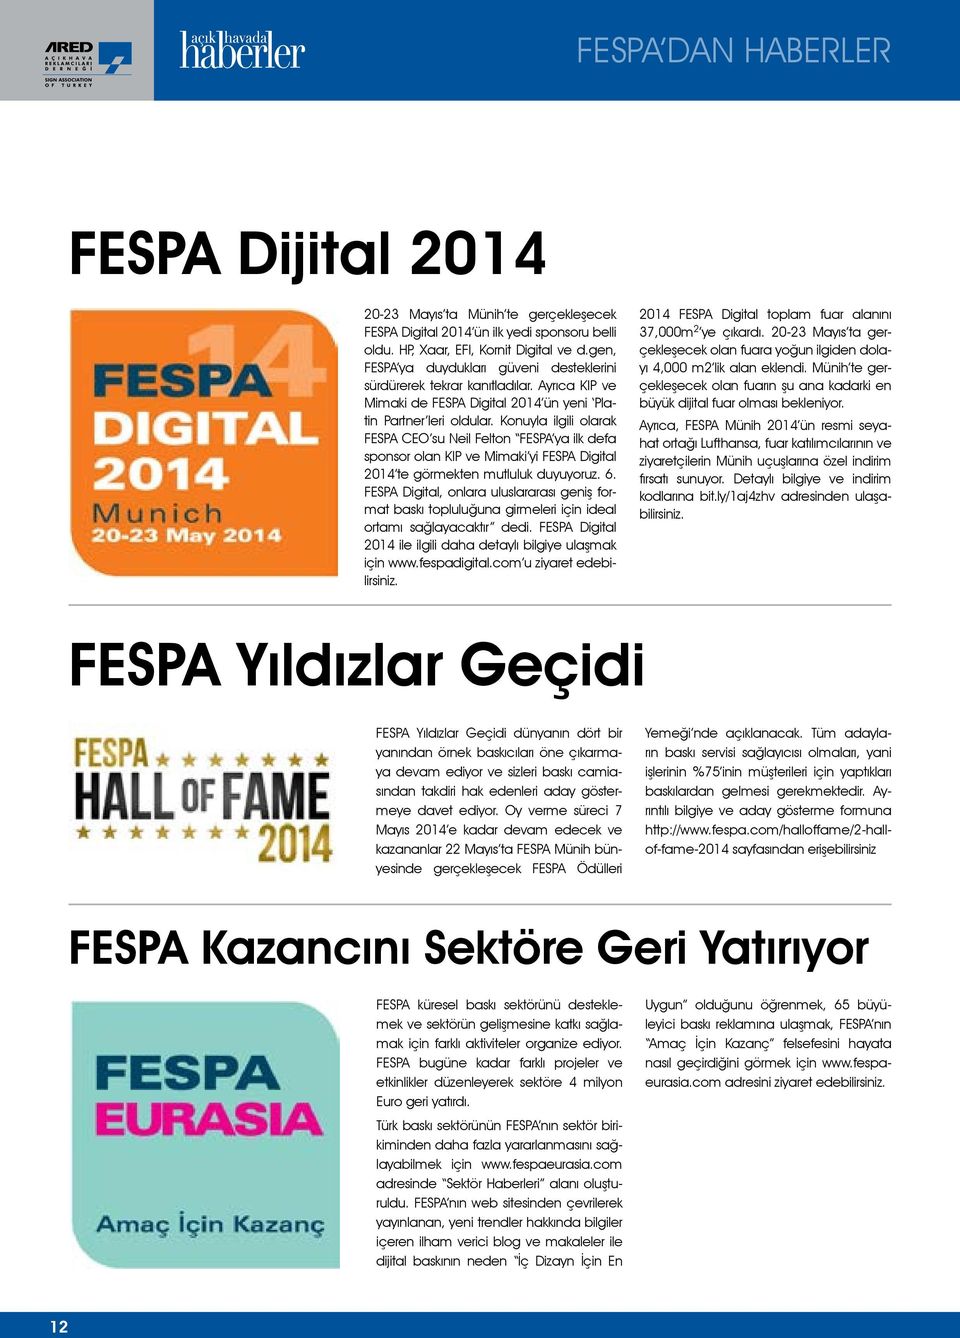 Konuyla ilgili olarak FESPA CEO su Neil Felton FESPA ya ilk defa sponsor olan KIP ve Mimaki yi FESPA Digital 2014 te görmekten mutluluk duyuyoruz. 6.